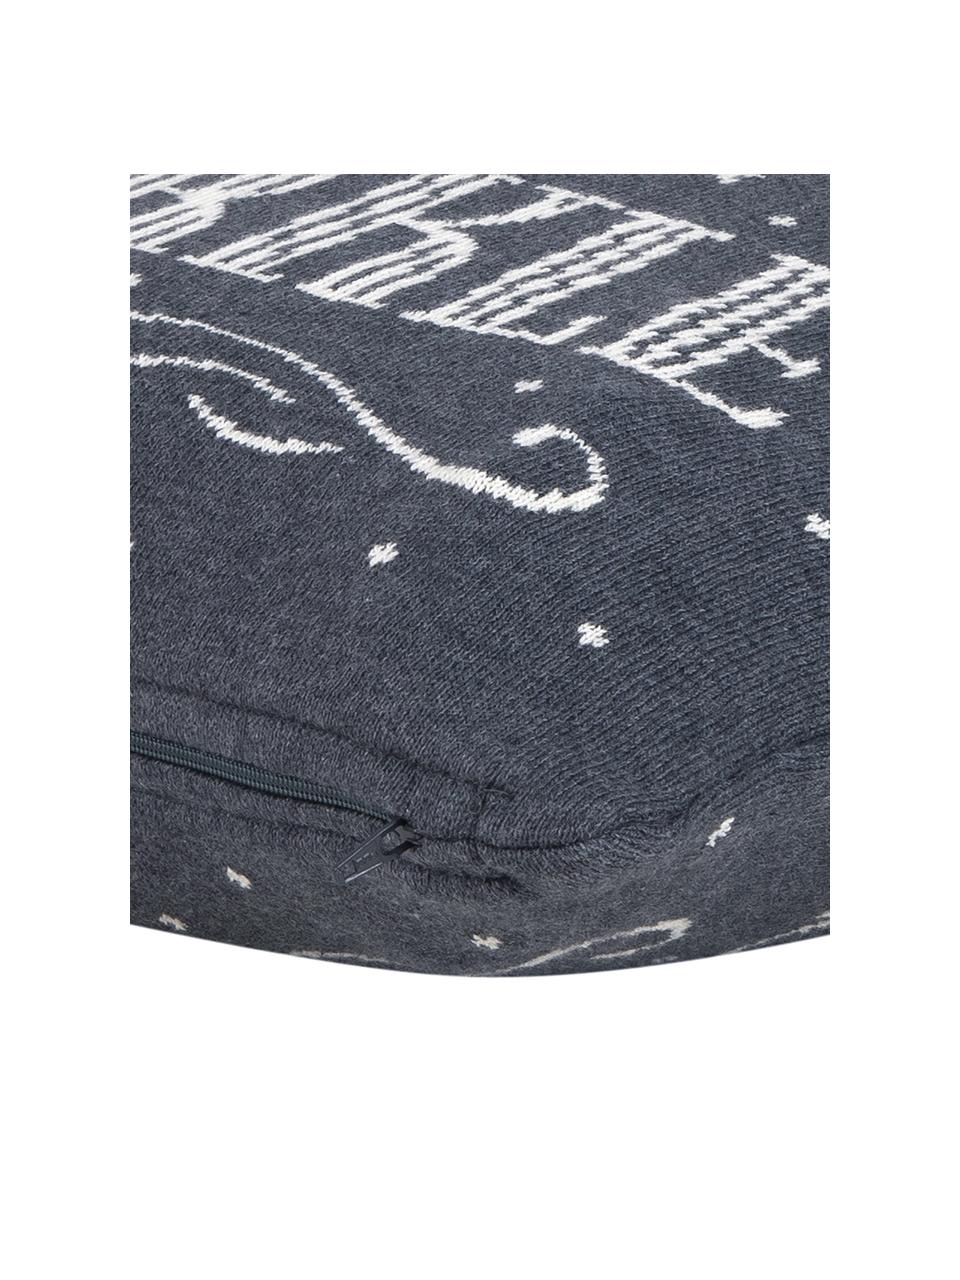 Kissenhülle Sparkle in Grau/Weiß mit Schriftzug, Baumwolle, Grau, Cremeweiß, 40 x 40 cm